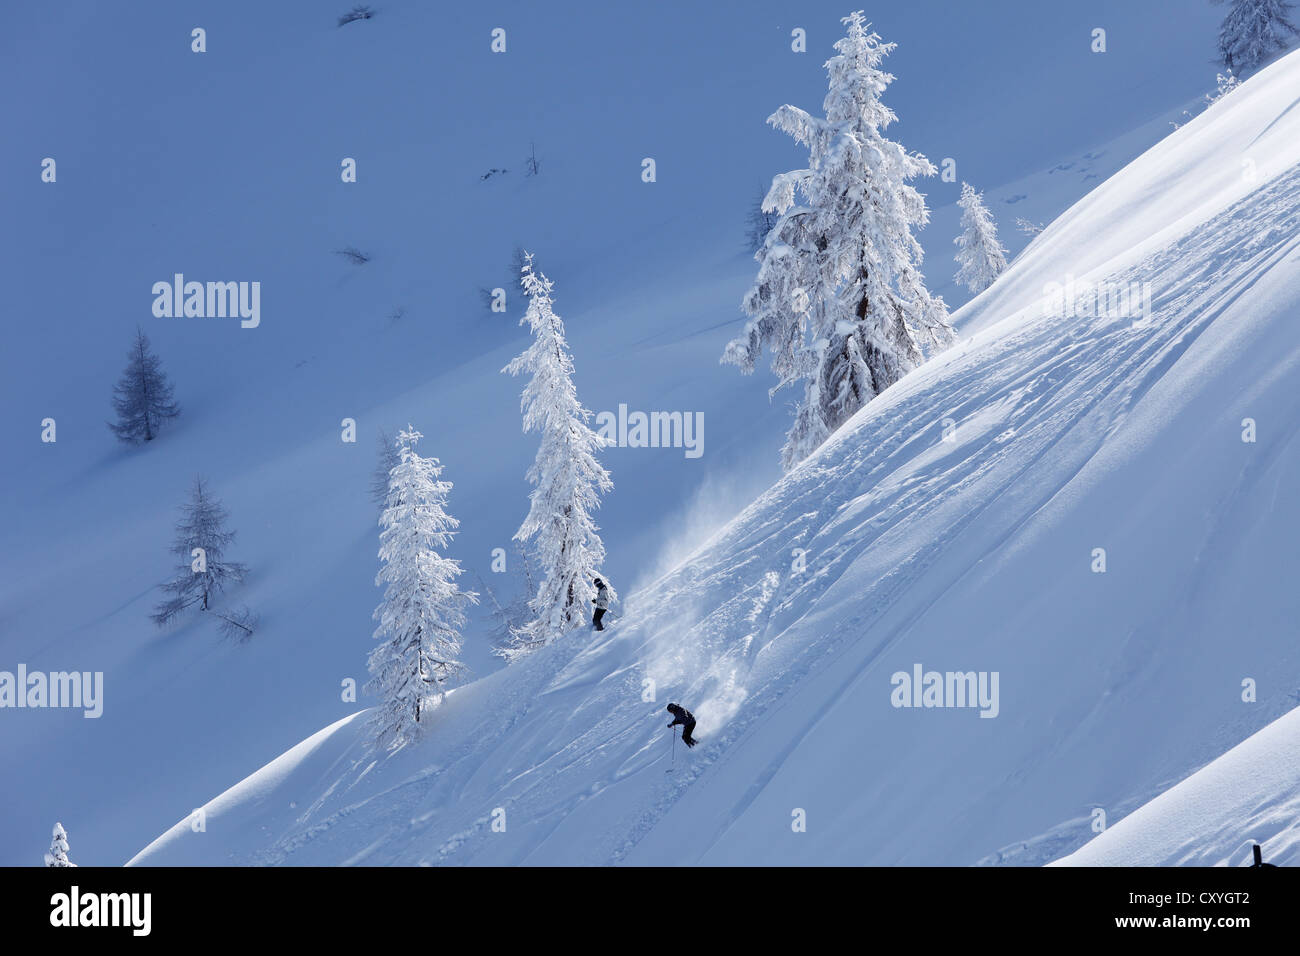 Deep powder snow, Hahn'l Piste ski slope, Reiteralm skiing area, Pichl-Preunegg near Schladming, Styria, Austria, Europe Stock Photo